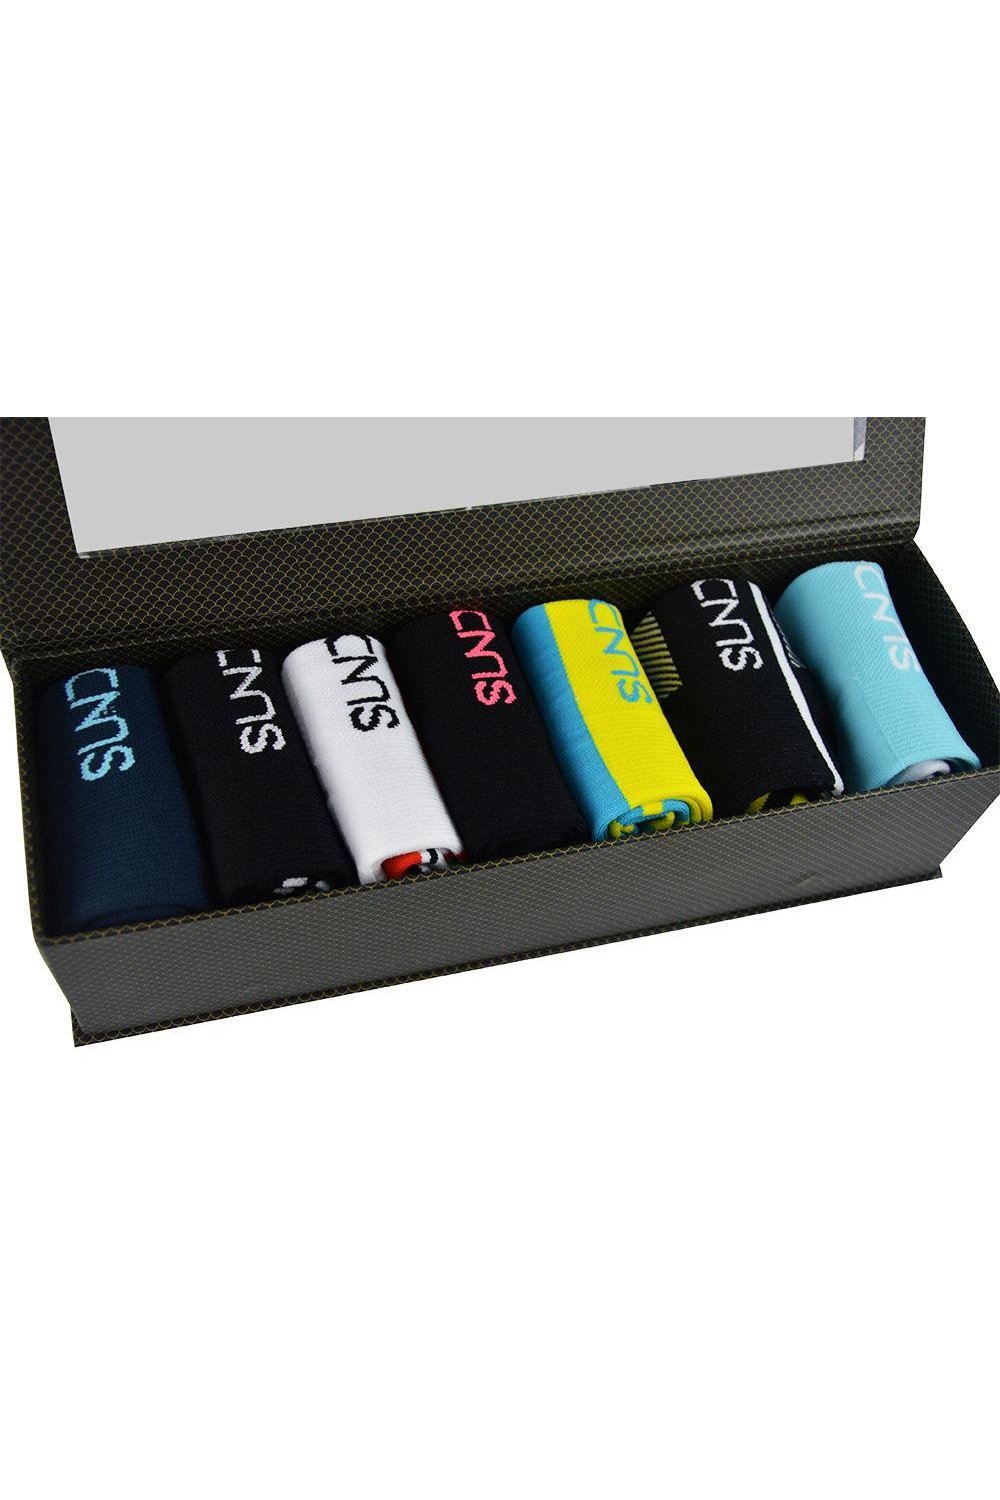 Sundried Weekly Cycle Socks 7 Pack Socks Activewear